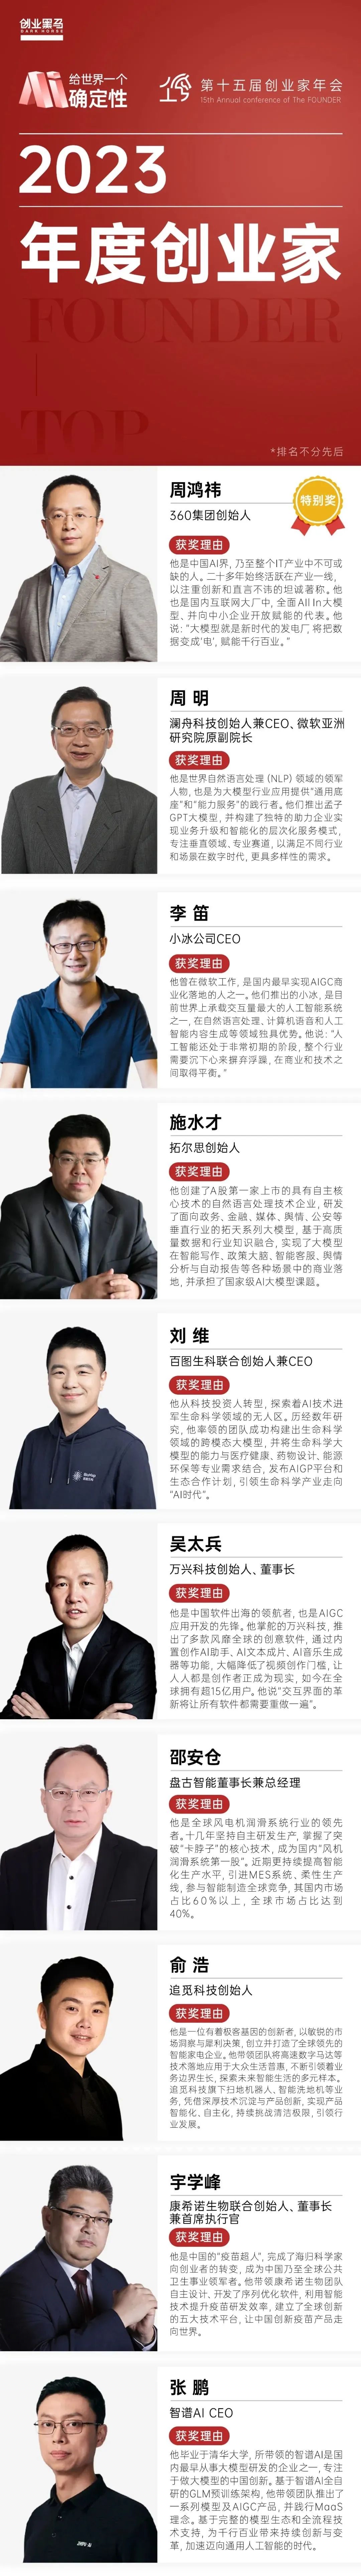 澜舟科技创始人&CEO周明获评创业黑马“2023年度创业家”